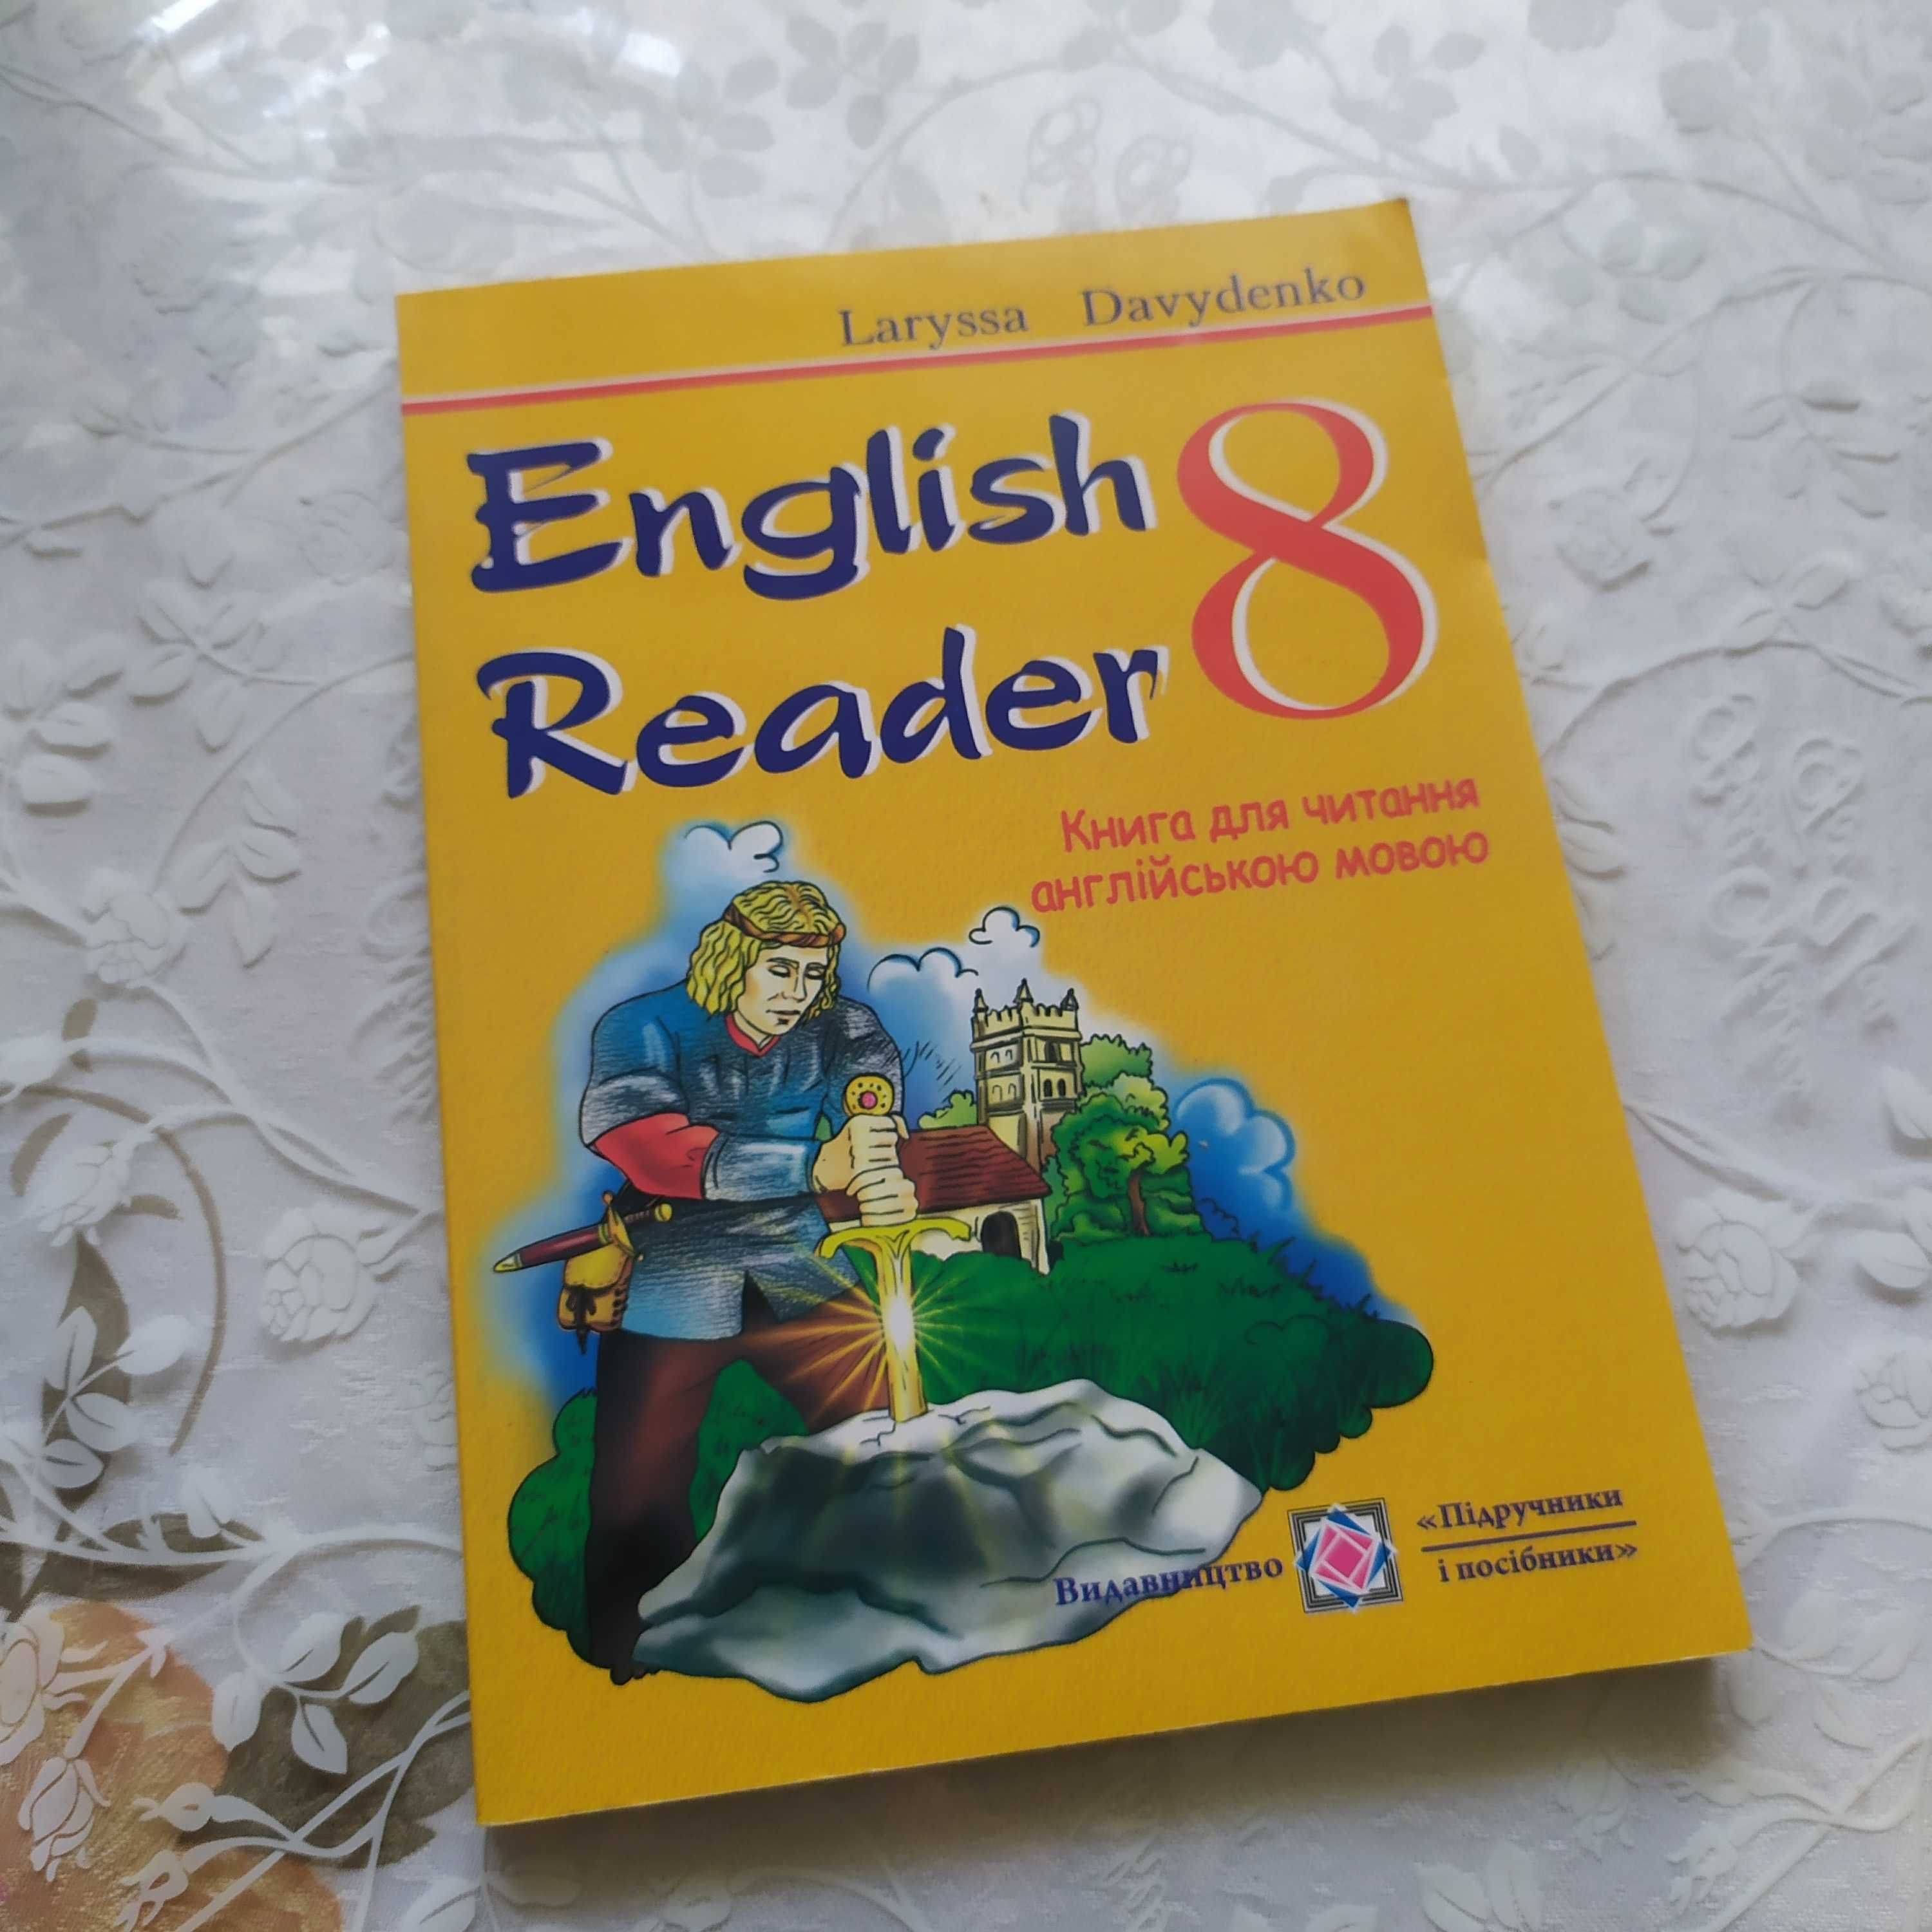 English Reader Книга для читання англійською мовою